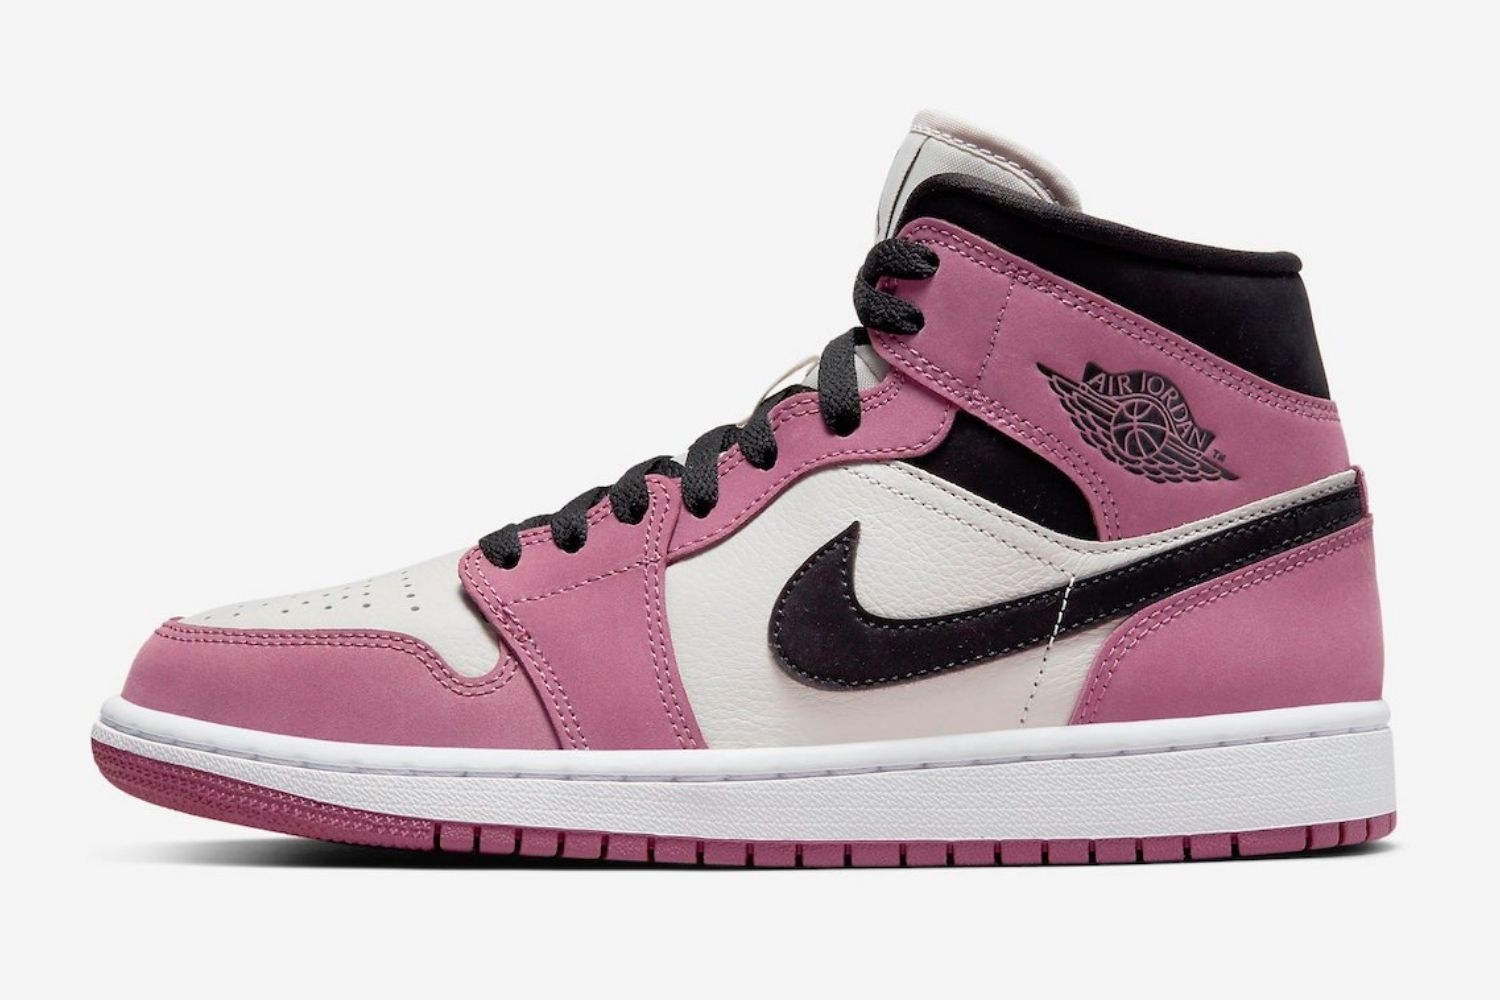 De Air Jordan 1 Mid krijgt een 'Berry Pink' colorway